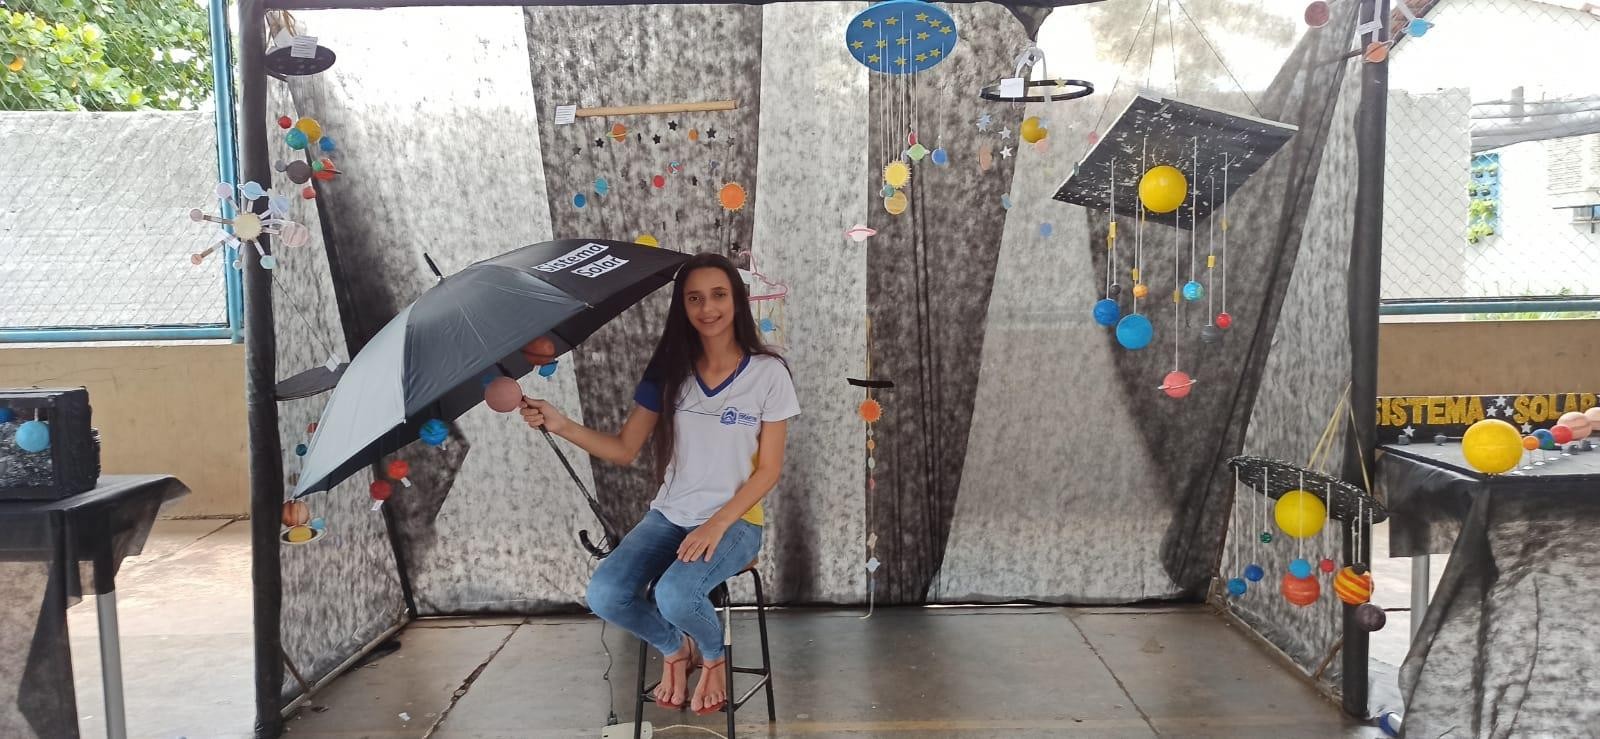 Isabela Martins e guarda-chuvas representando a galáxia